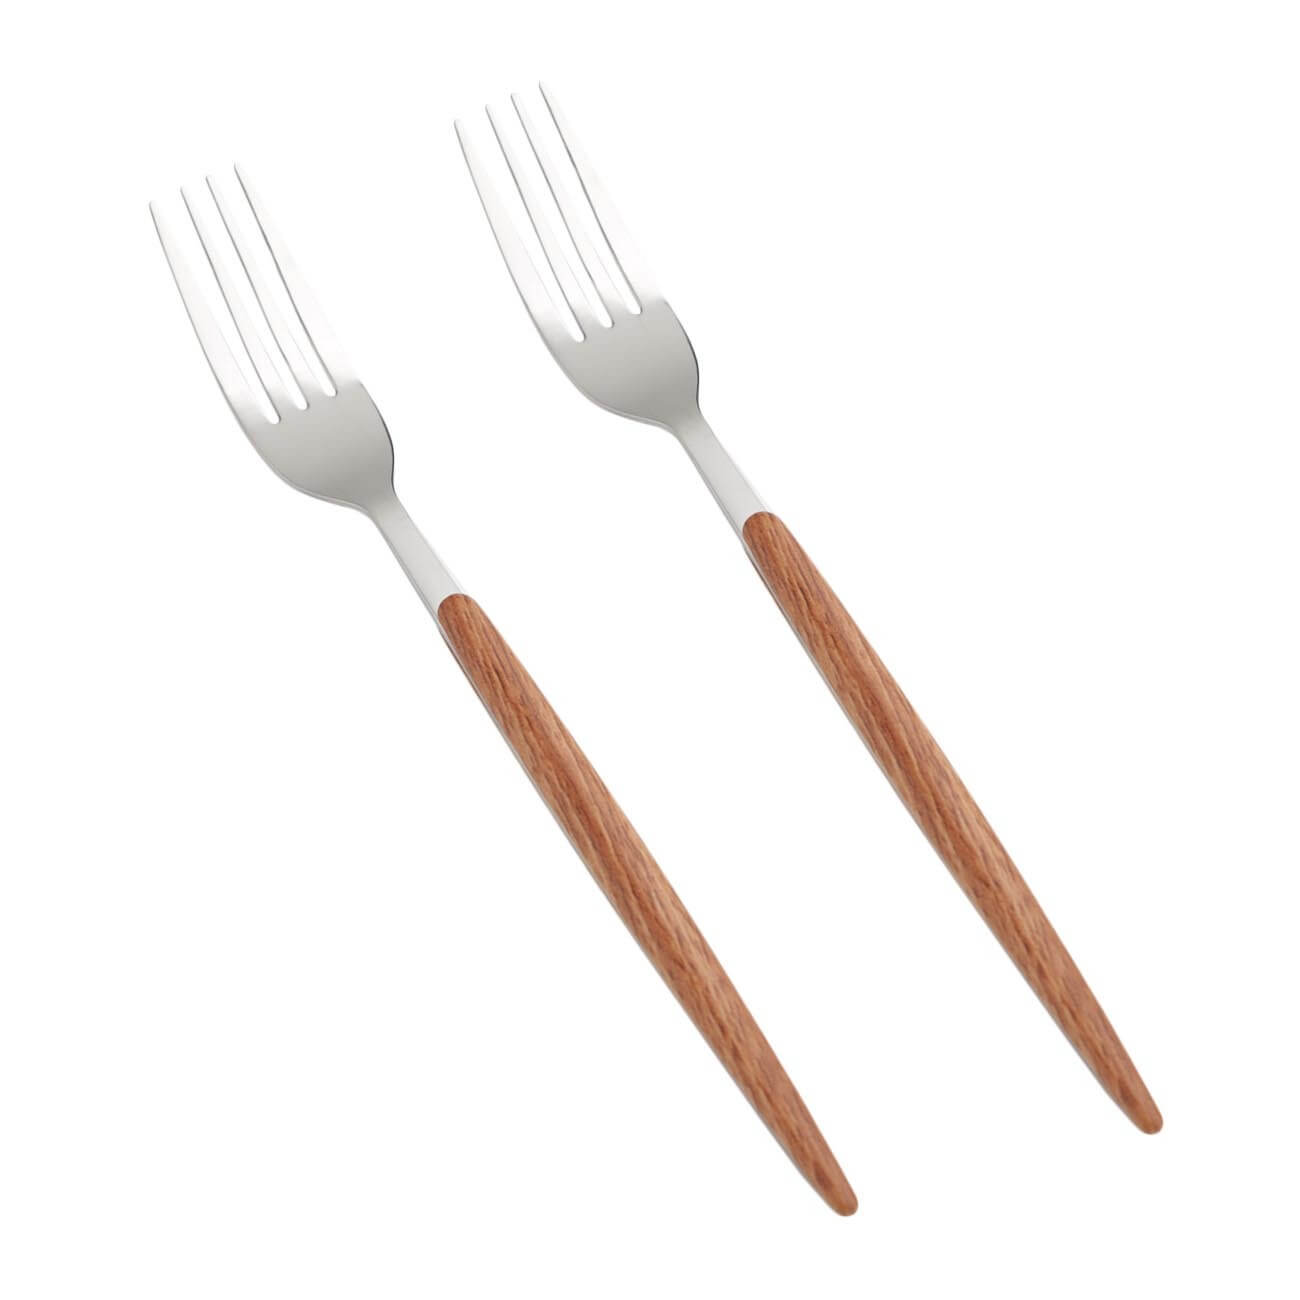 Вилка столовая, 2 шт, сталь/пластик, коричневая, Oslo набор для барбекю naterial beta нержавеющая сталь щипцы вилка нож лопатка щетка для чистки